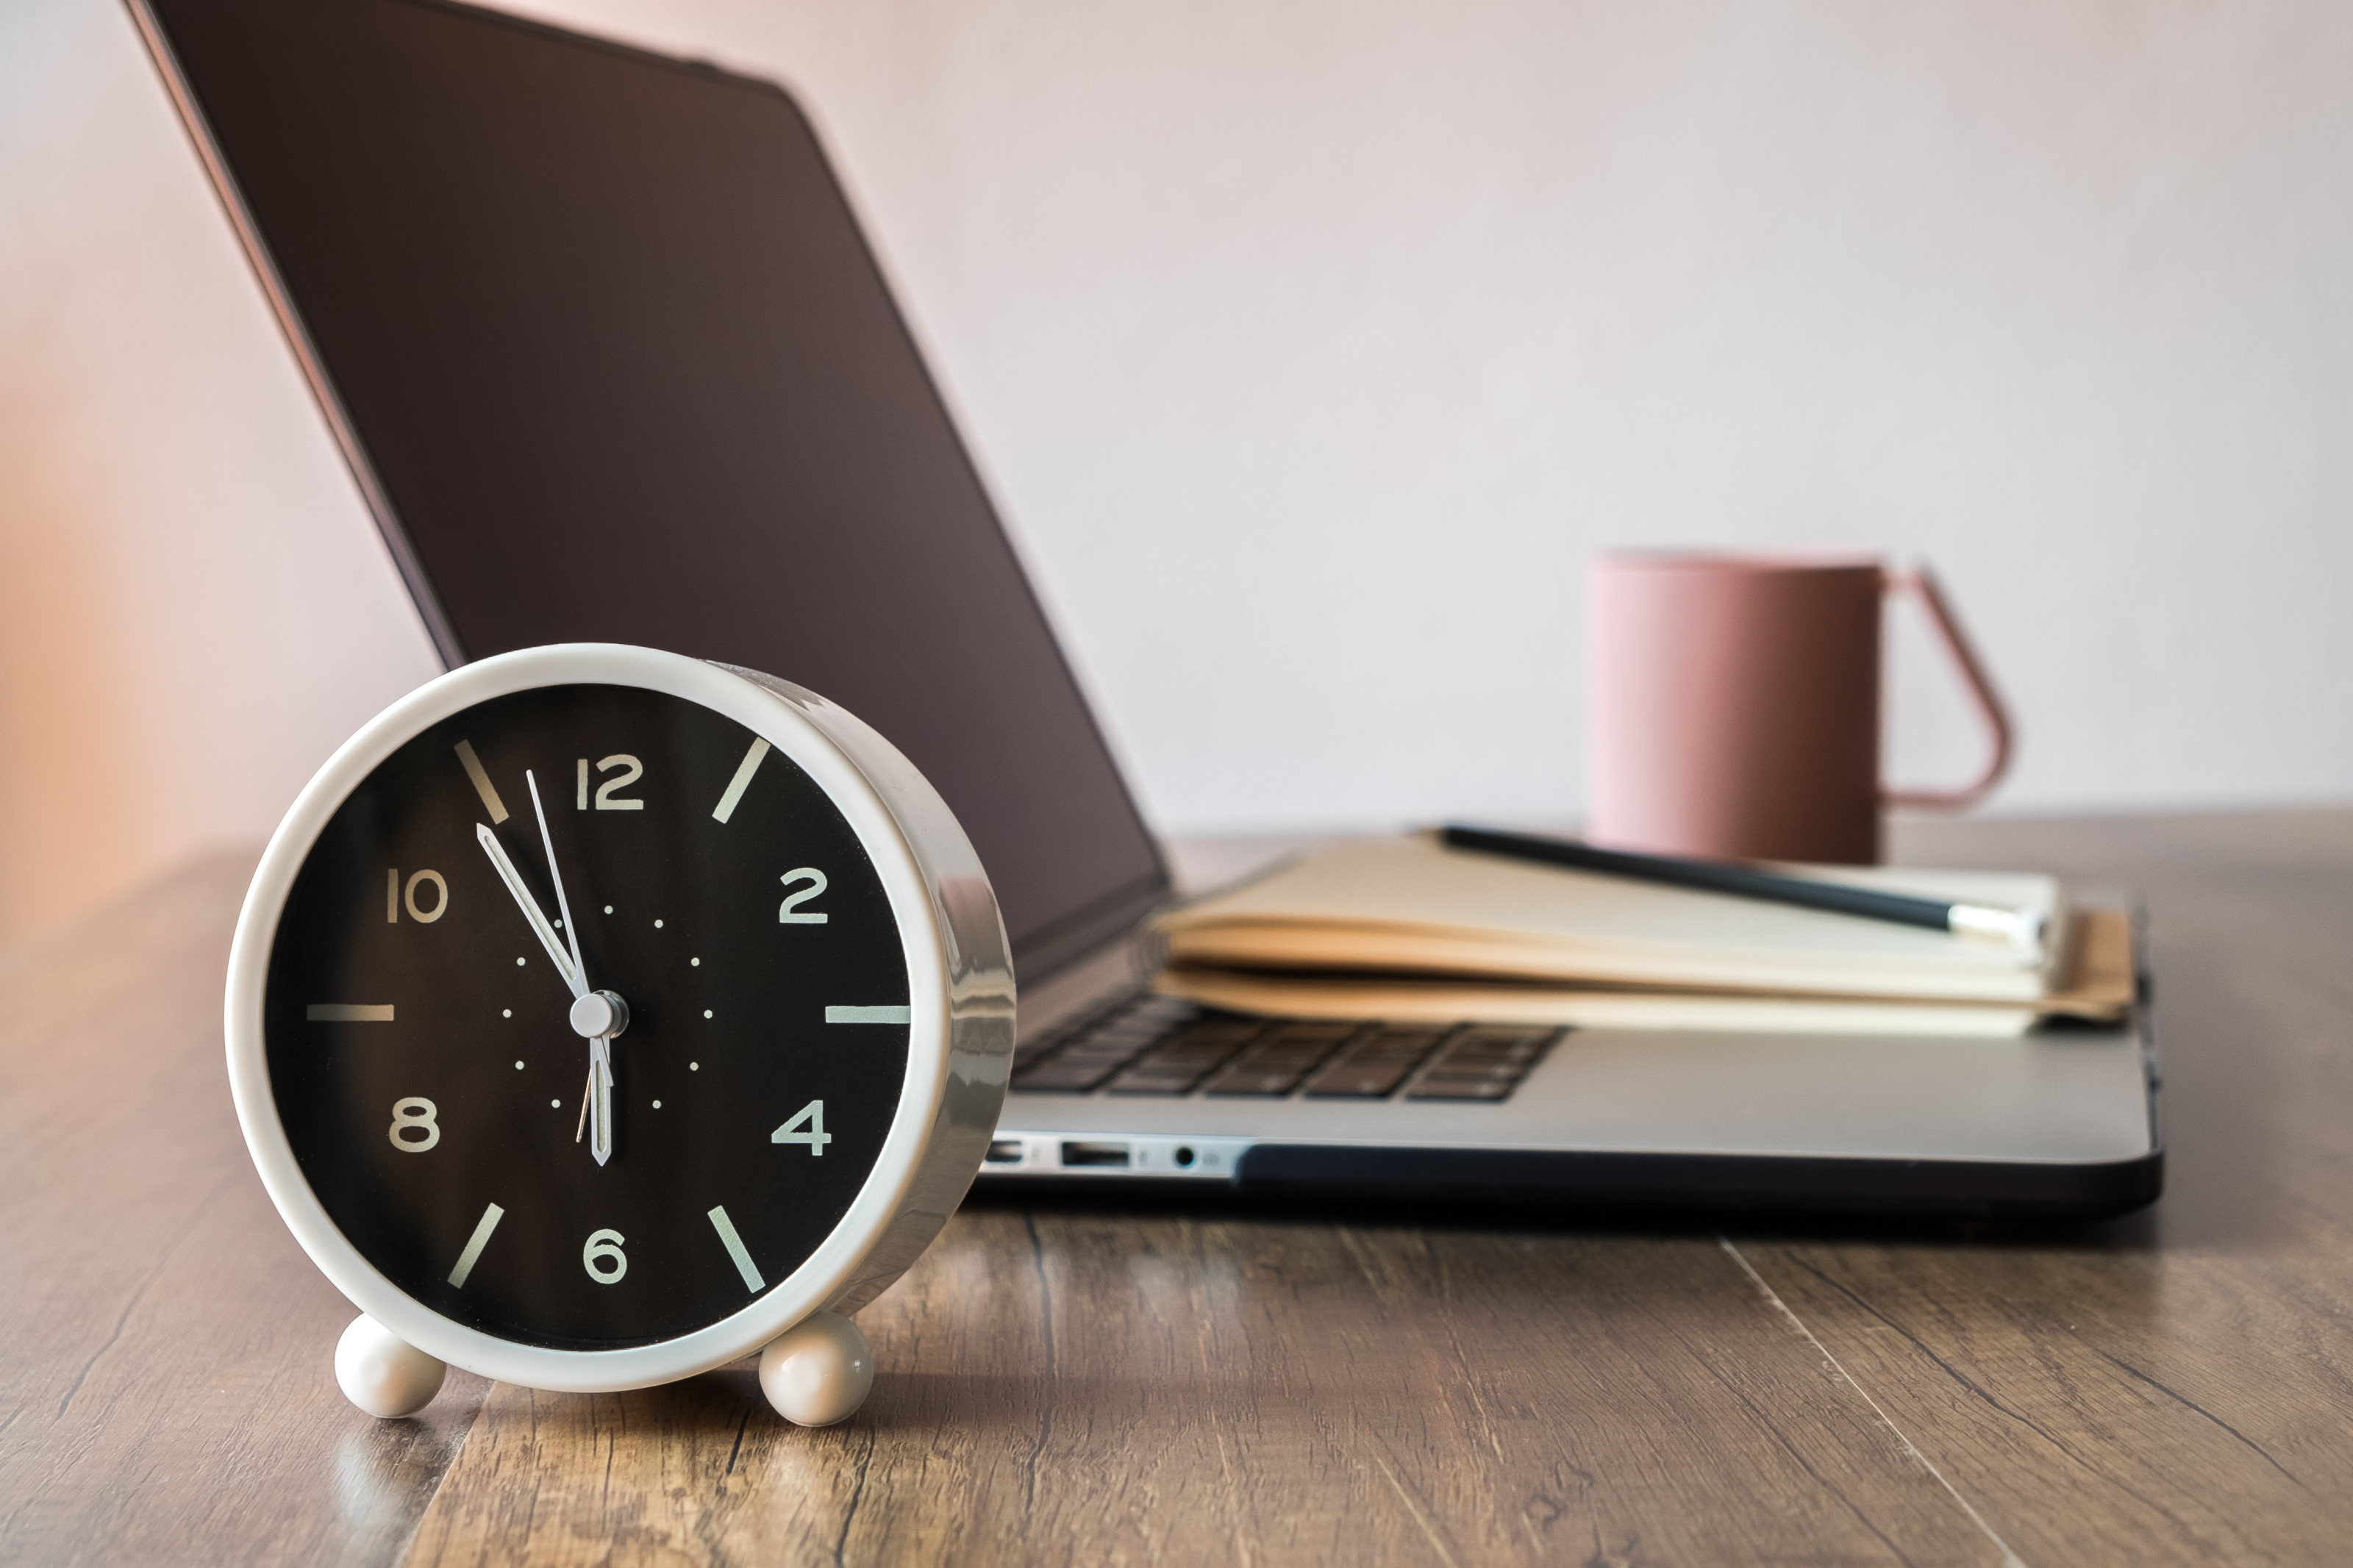 Wecker mit Uhrzeit kurz vor 06:00 Uhr steht vor einem aufgeklapptem Laptop mit Notizblock, Stift und Tasse auf einem Holztisch